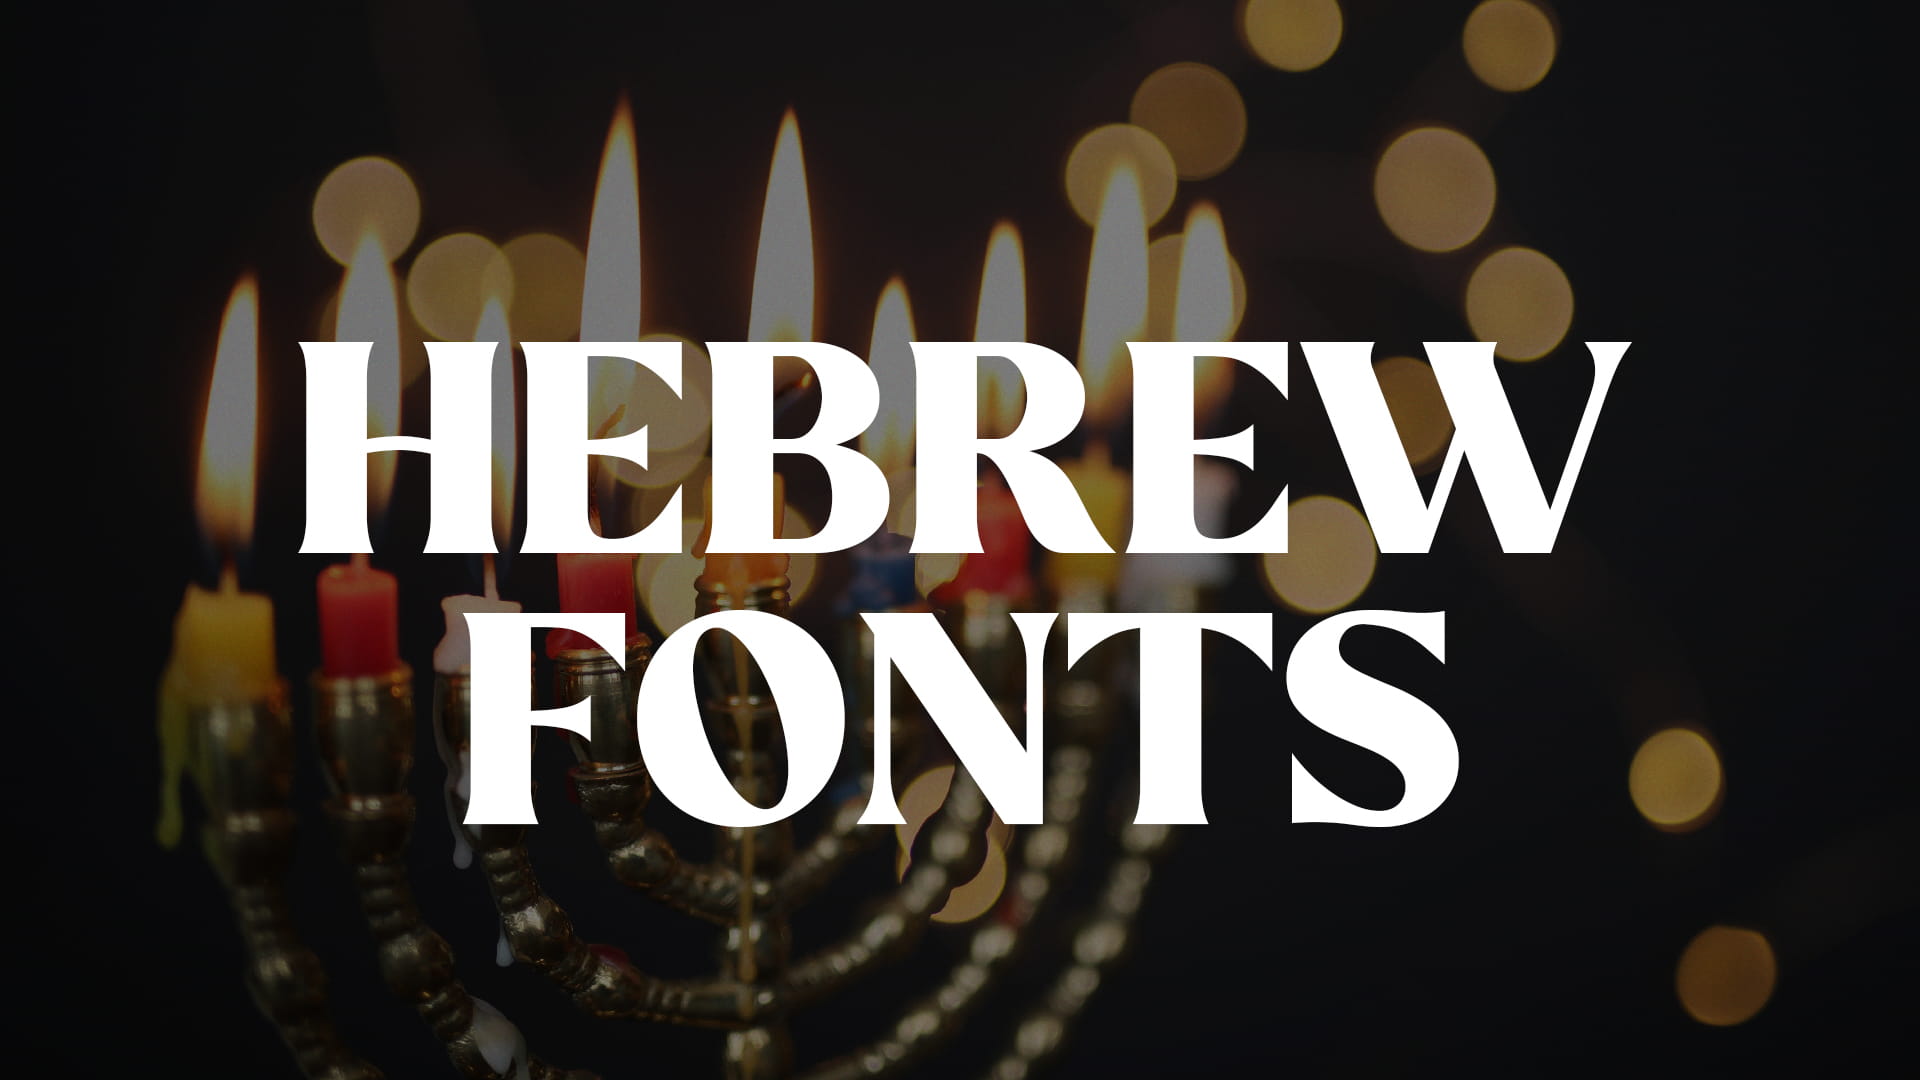 Hebrew Fonts